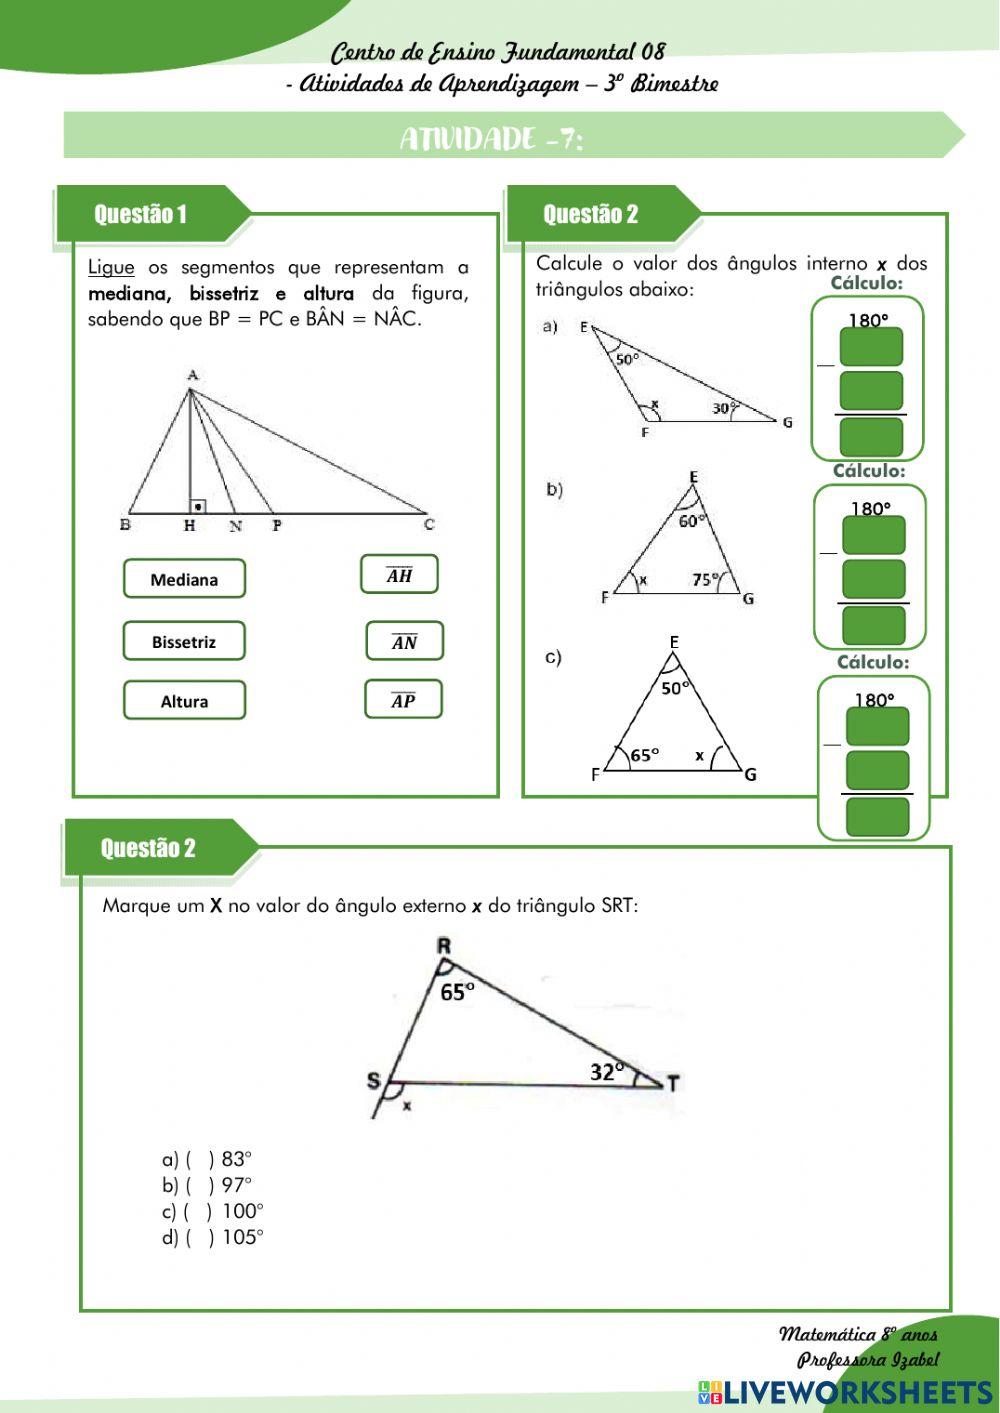 Atividade 07: Mediana, Bissetriz, Altura e ângulos dos Triângulos